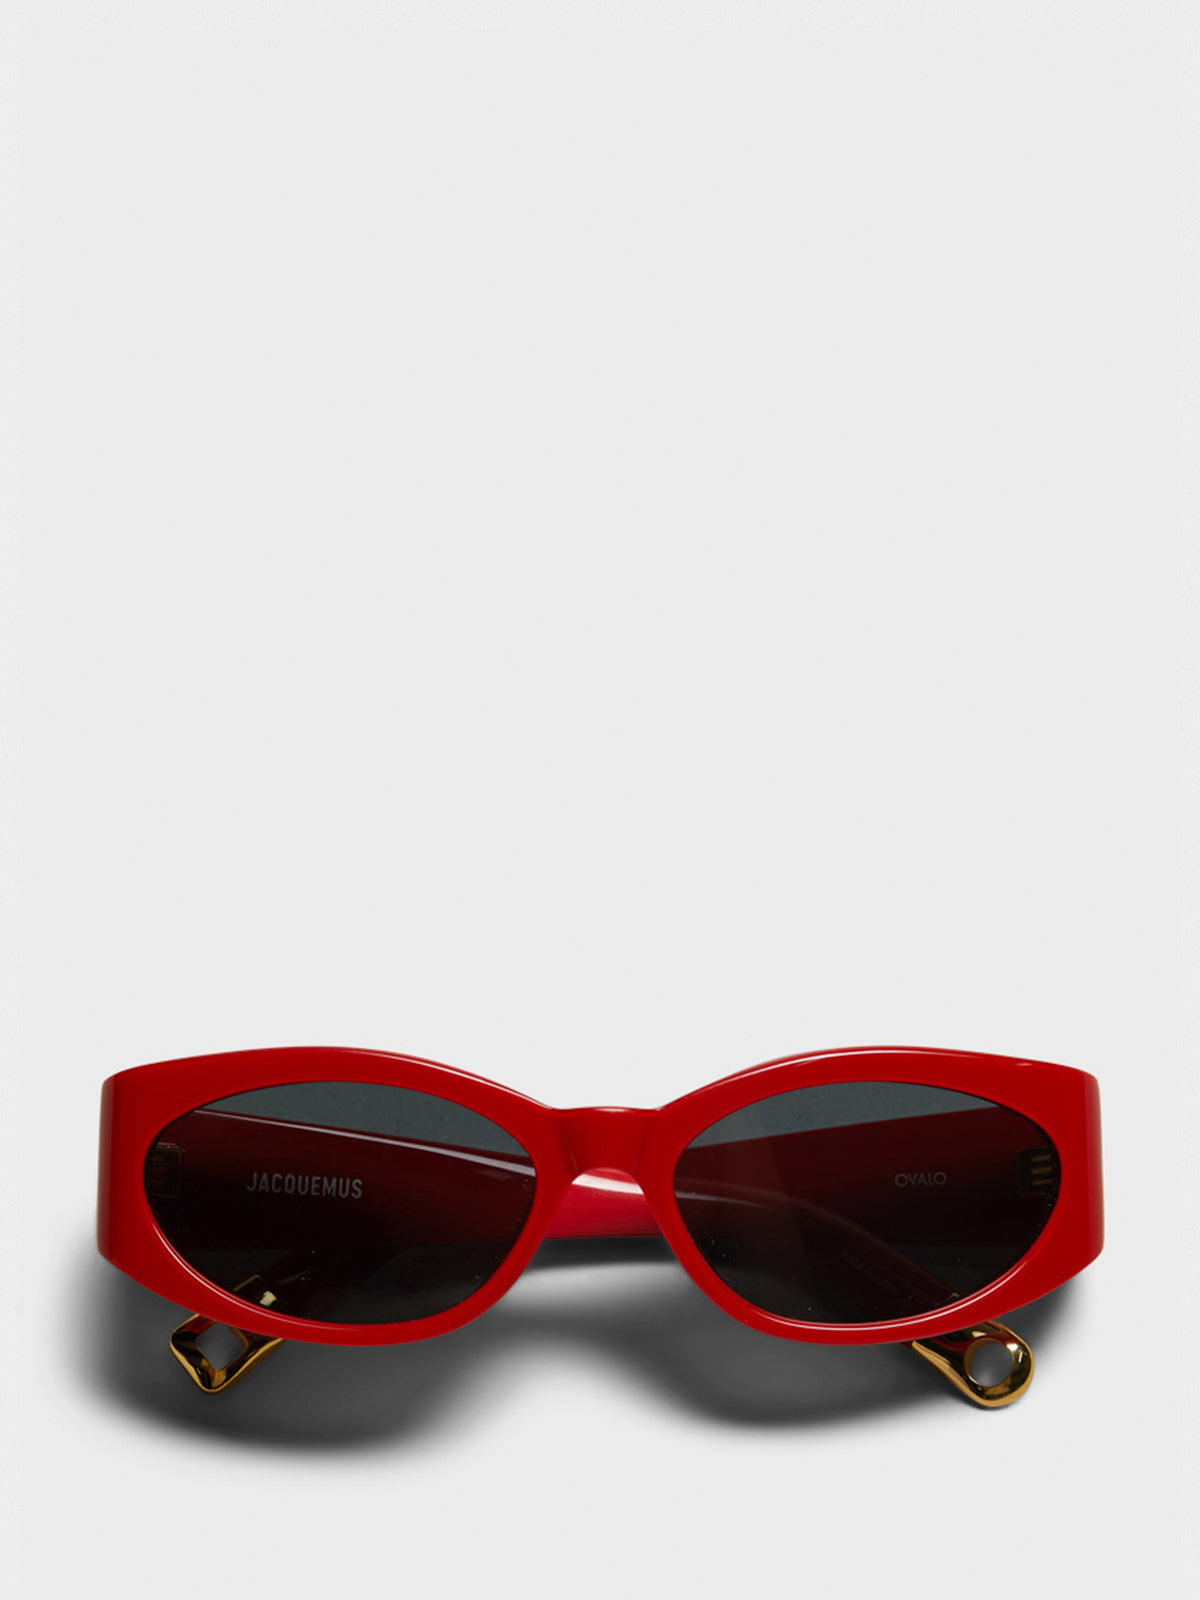 Ovalo Solbriller i Rød